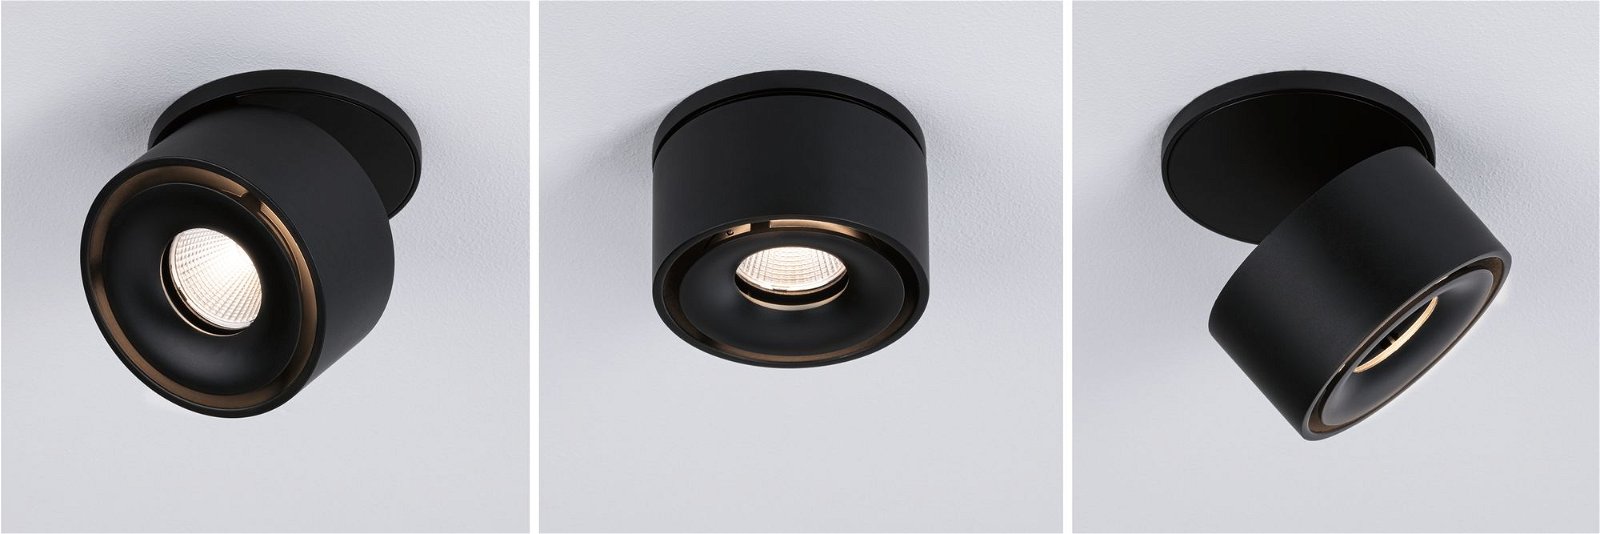 LED-inbouwlamp Spircle rond 78mm 8W 550lm 230V 3000K Zwart mat